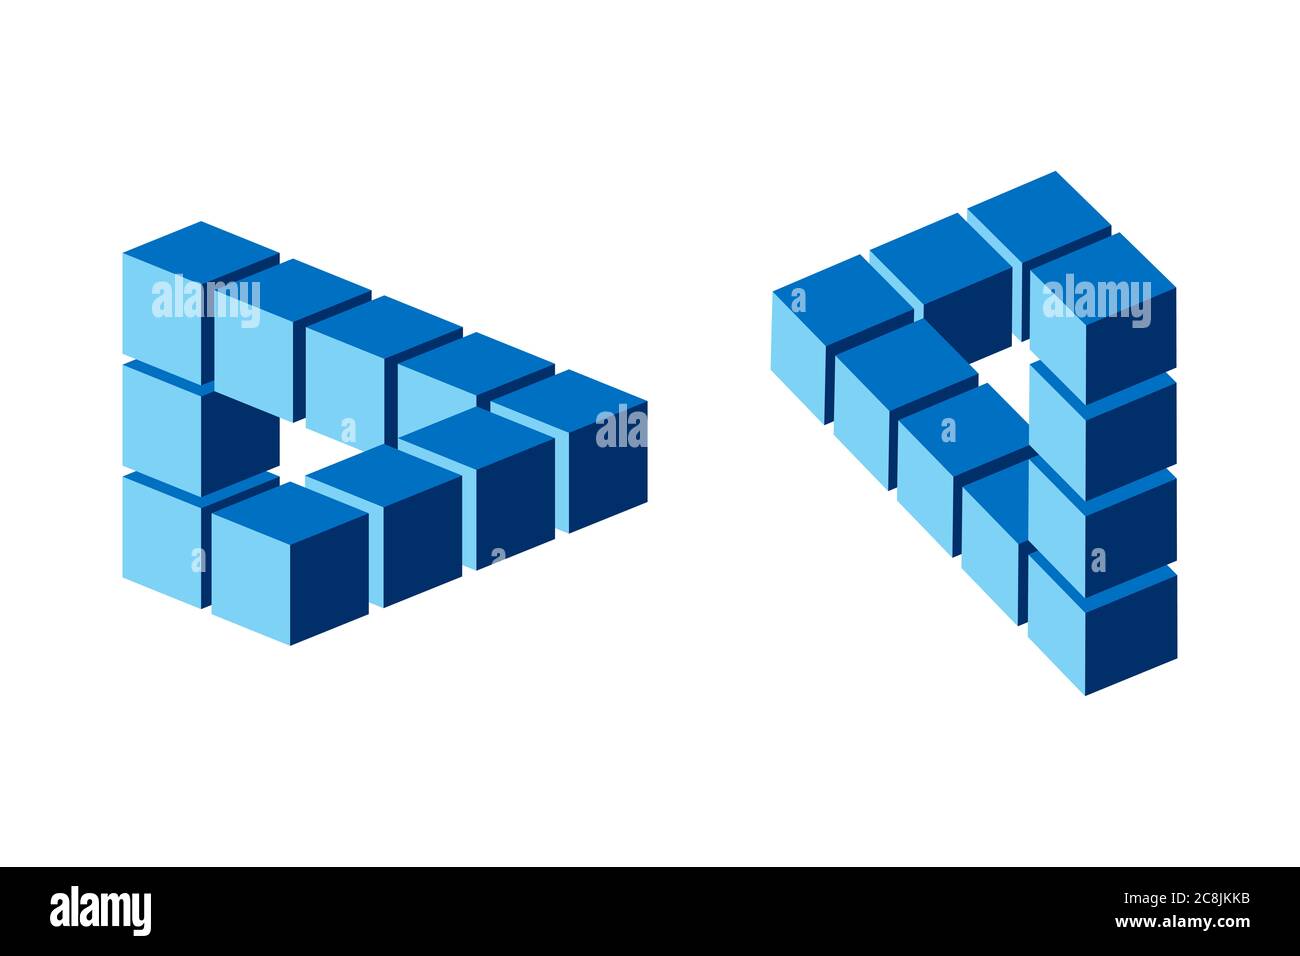 Zwei unmögliche Figuren, Reutersvard optische Illusionen, blau gefärbt. Erstellt nach dem Konzept eines Penrose-Dreiecks, dargestellt mit blauen Würfeln. Stockfoto